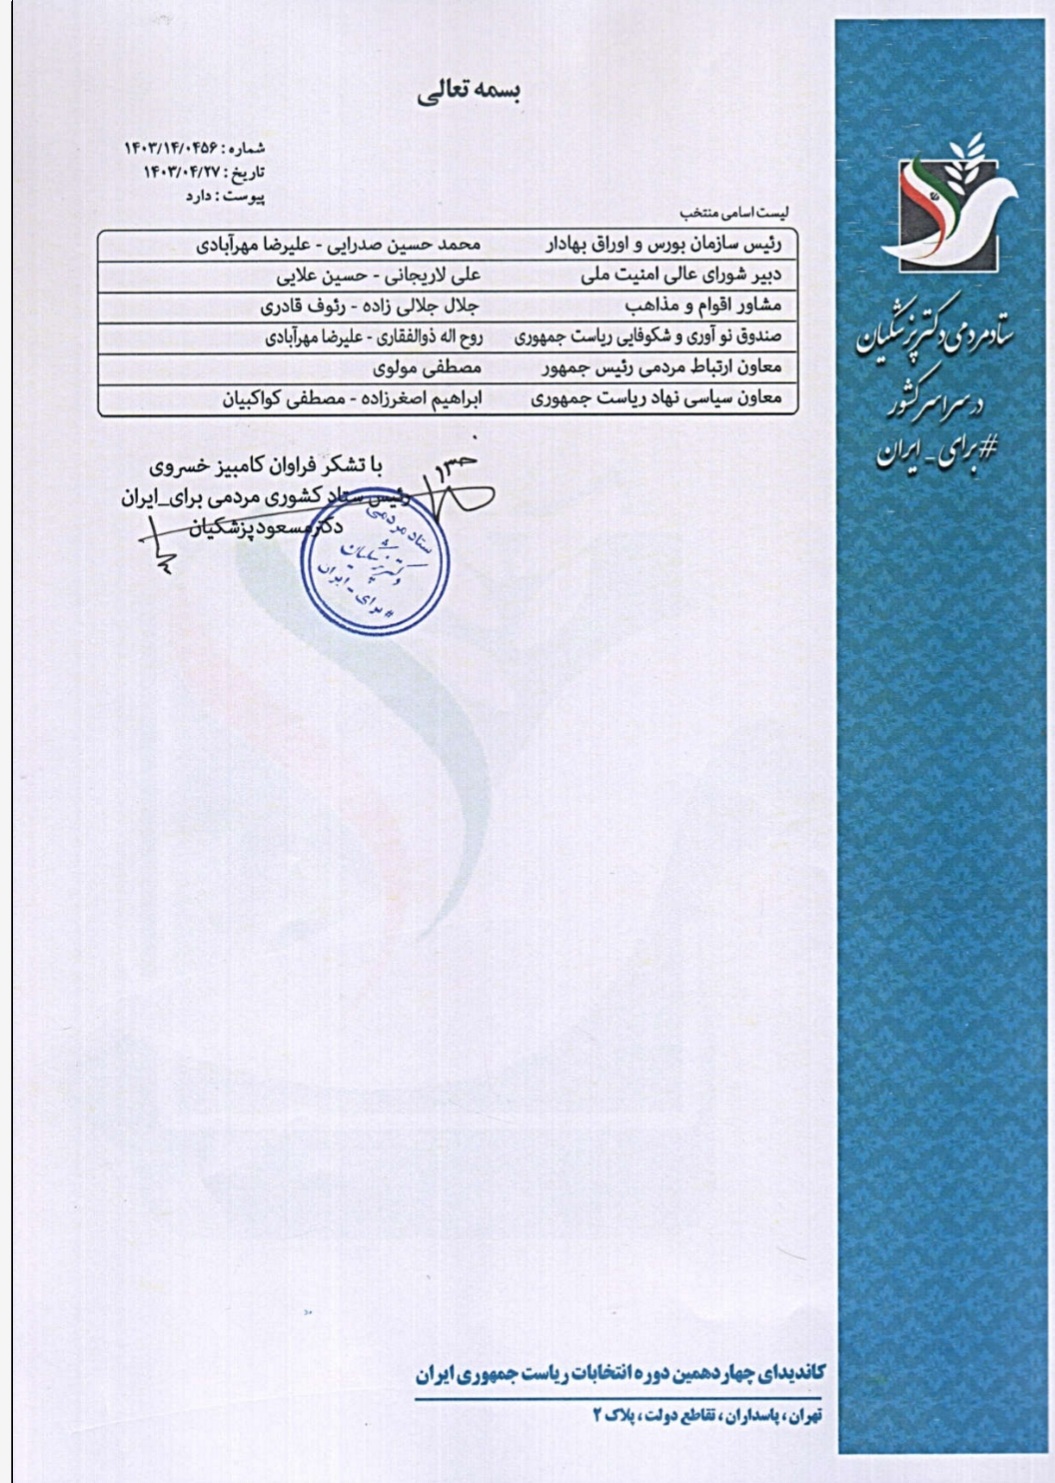 لیست پیشنهادی ستاد کشوری مردمی برای ایران به دکتر پزشکیان